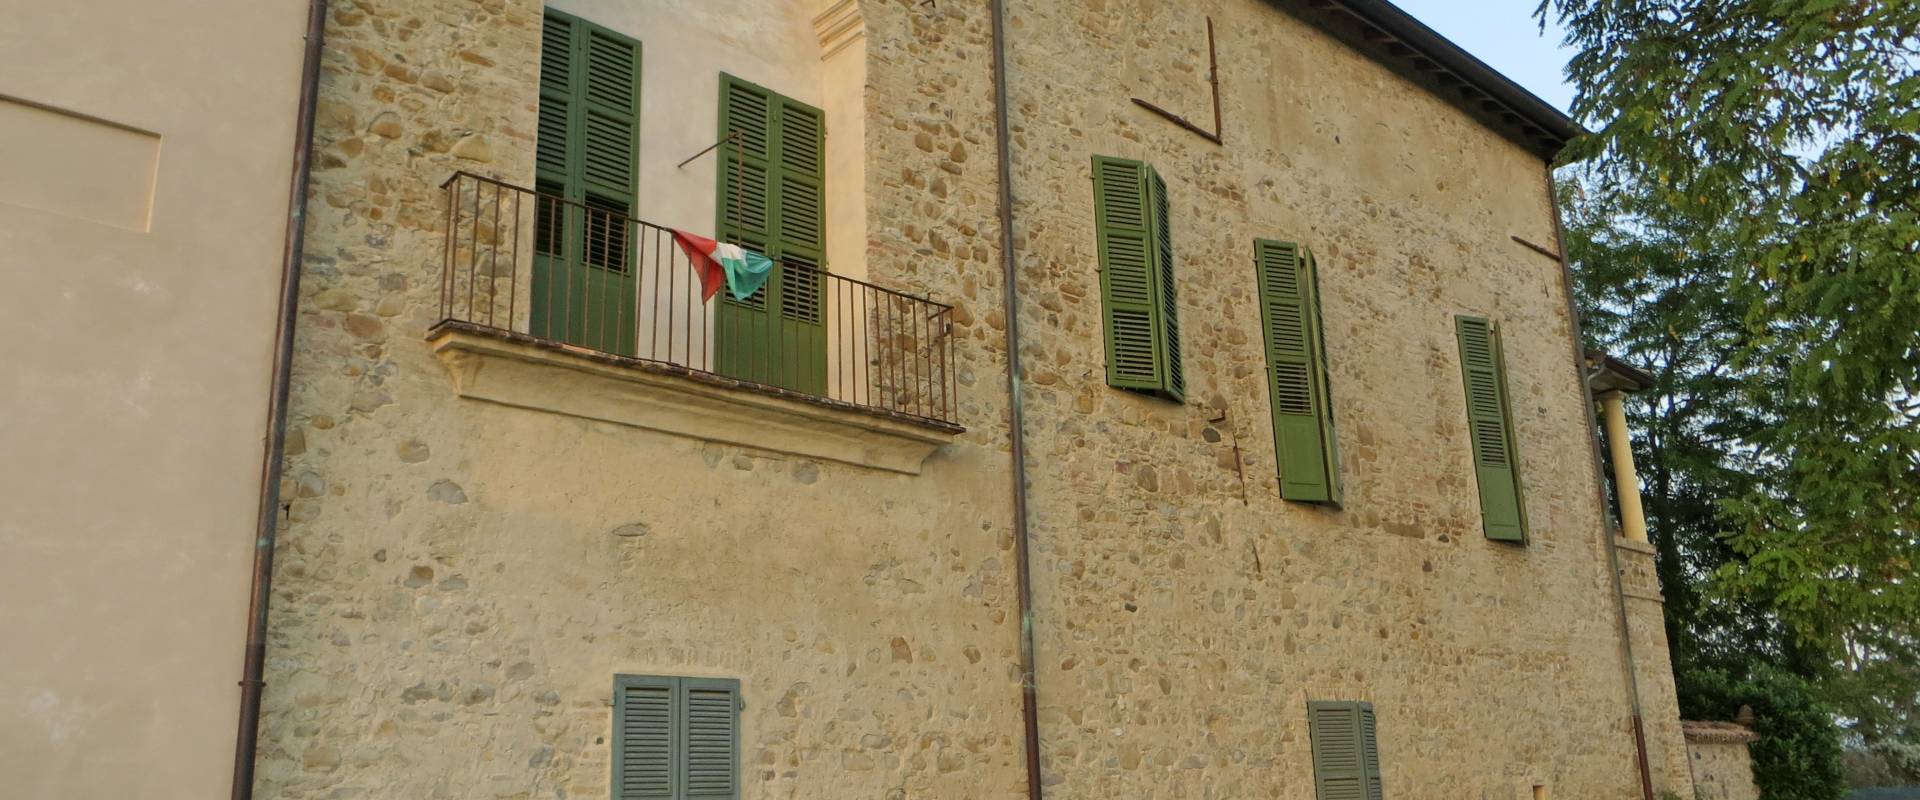 Rocca Sanvitale (Sala Baganza) - angolo sud-ovest 1 2019-09-16 foto di Parma198